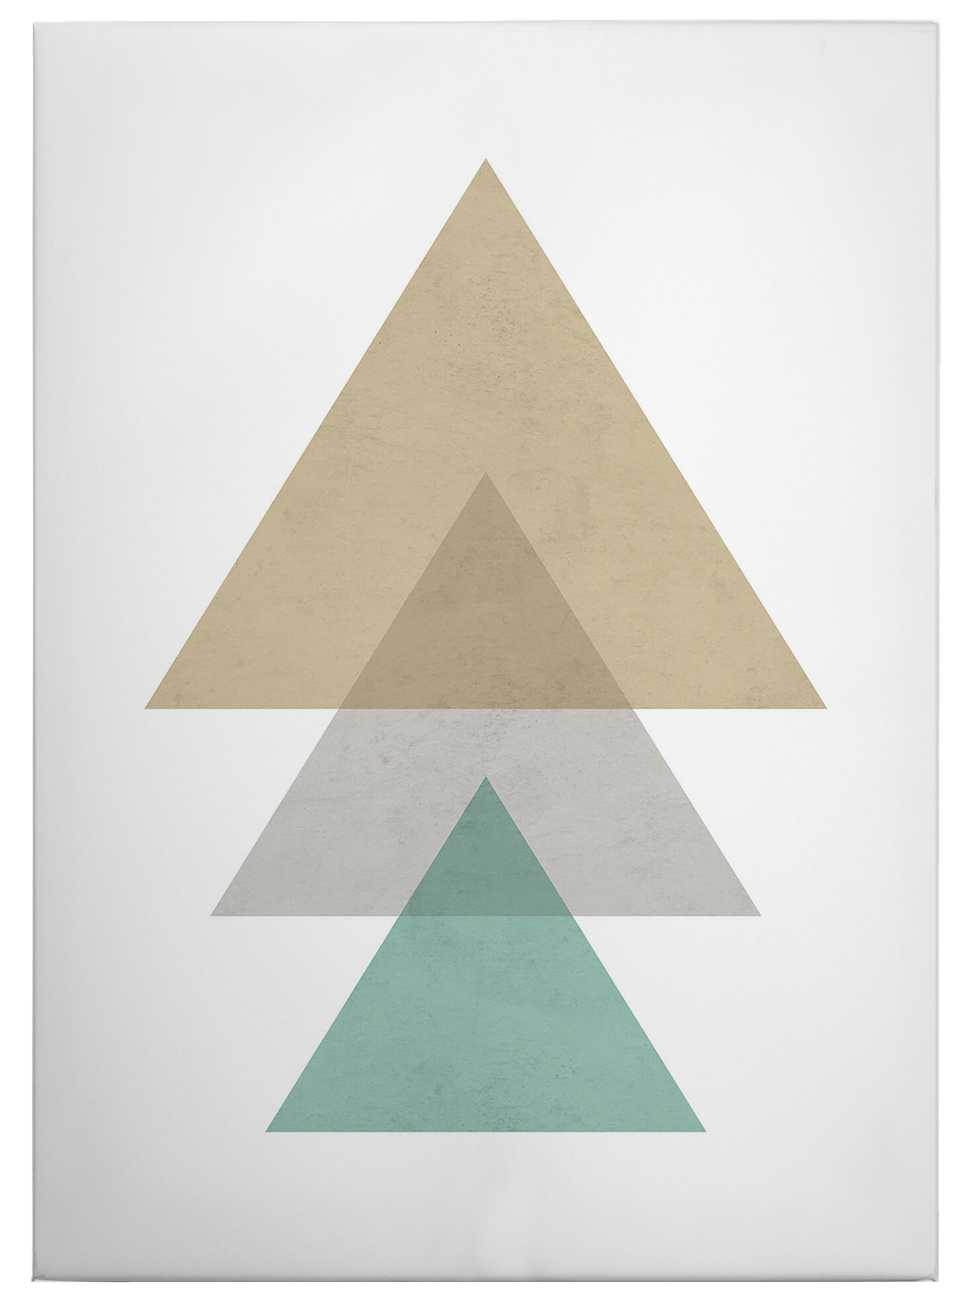             Canvas schilderij Patroon van driehoeken - 0,50 m x 0,70 m
        